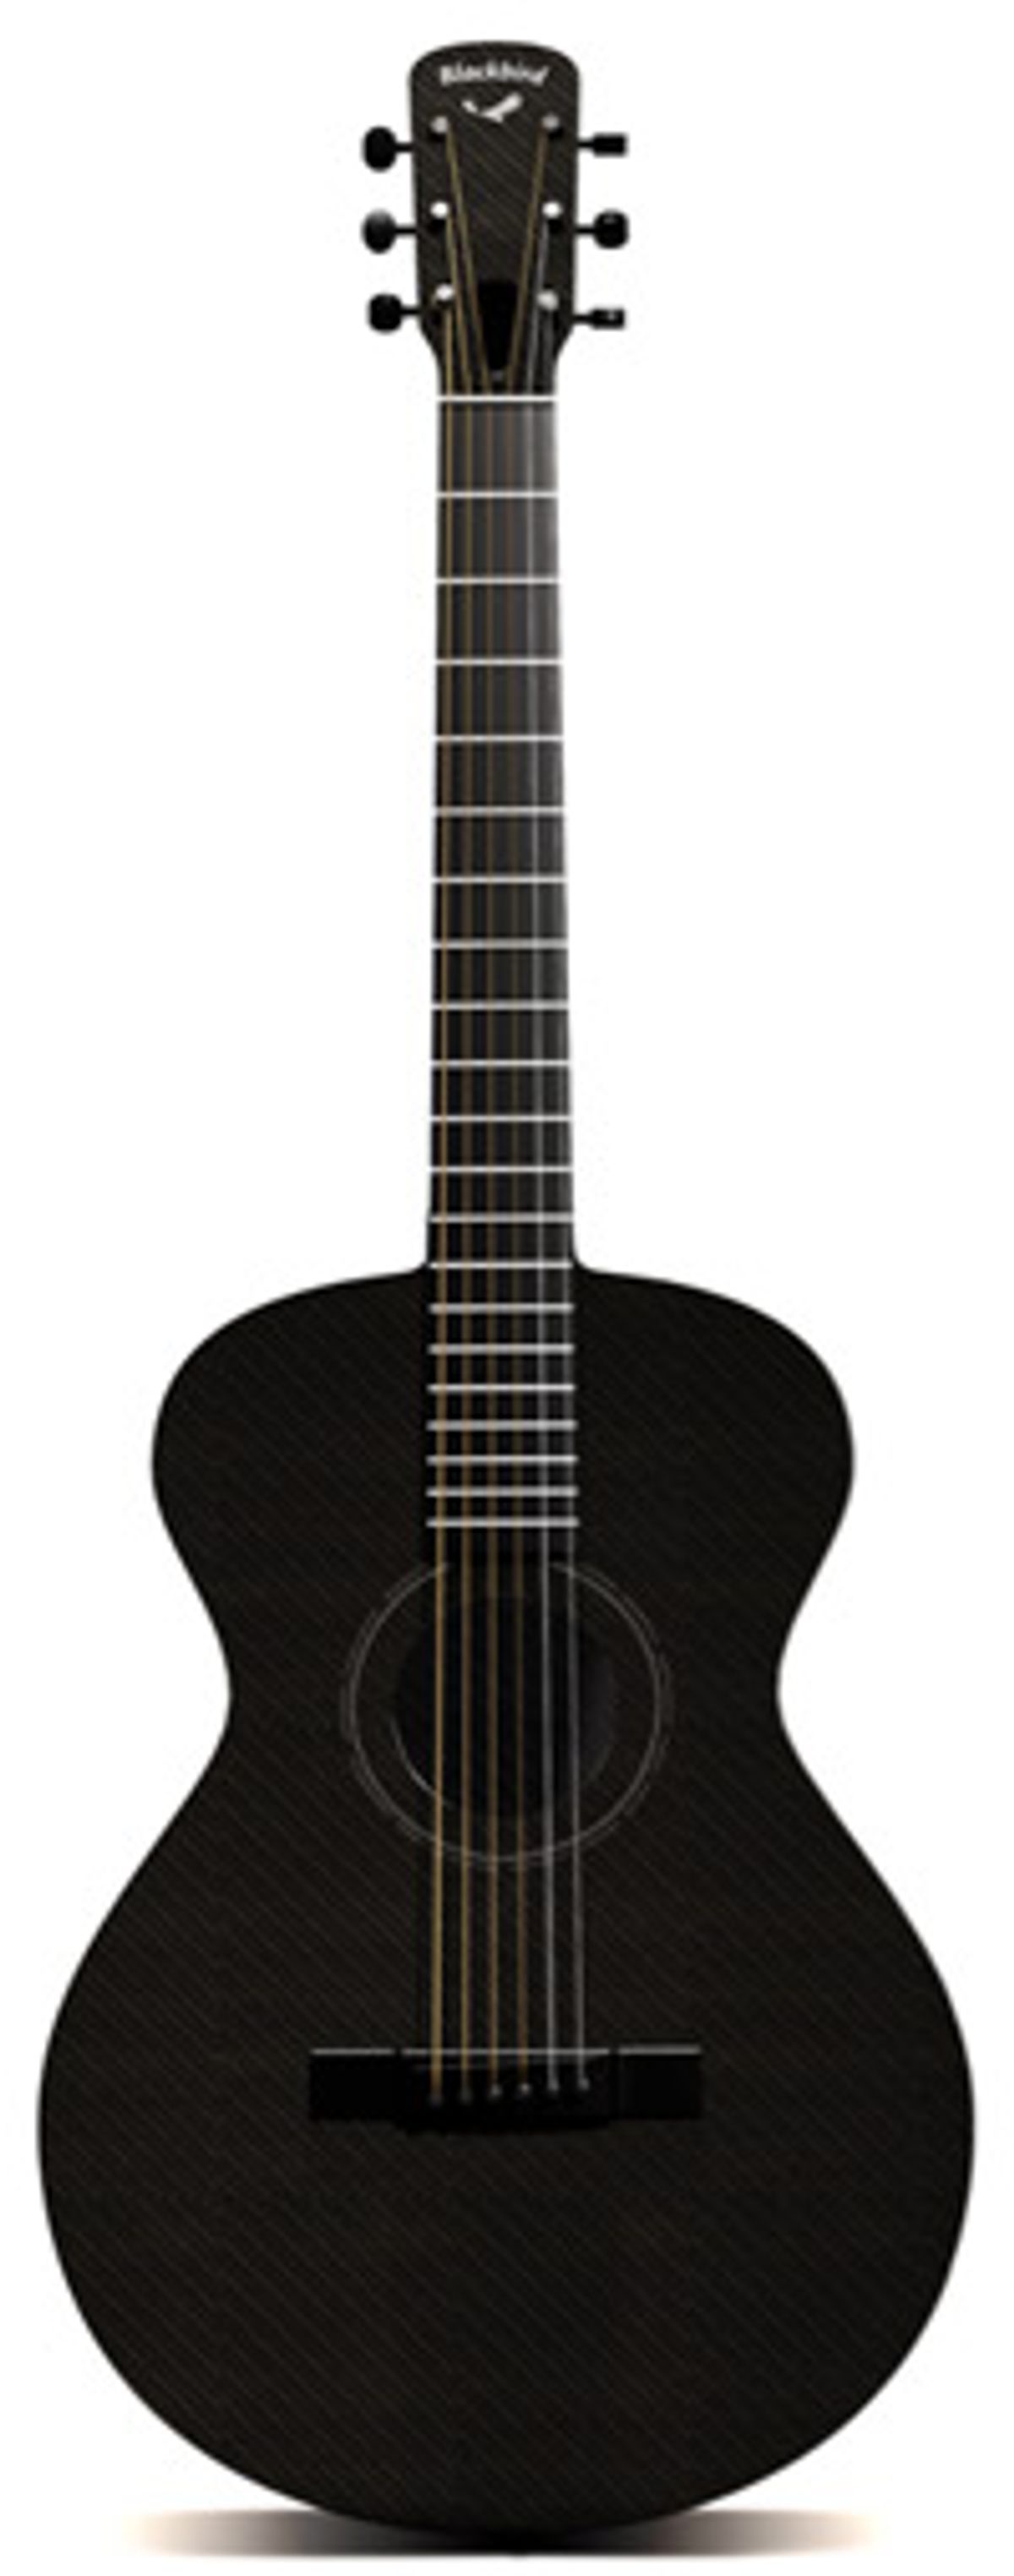 Blackbird Guitars Debuts Blackbird Lucky 13 Small-Body Guitar